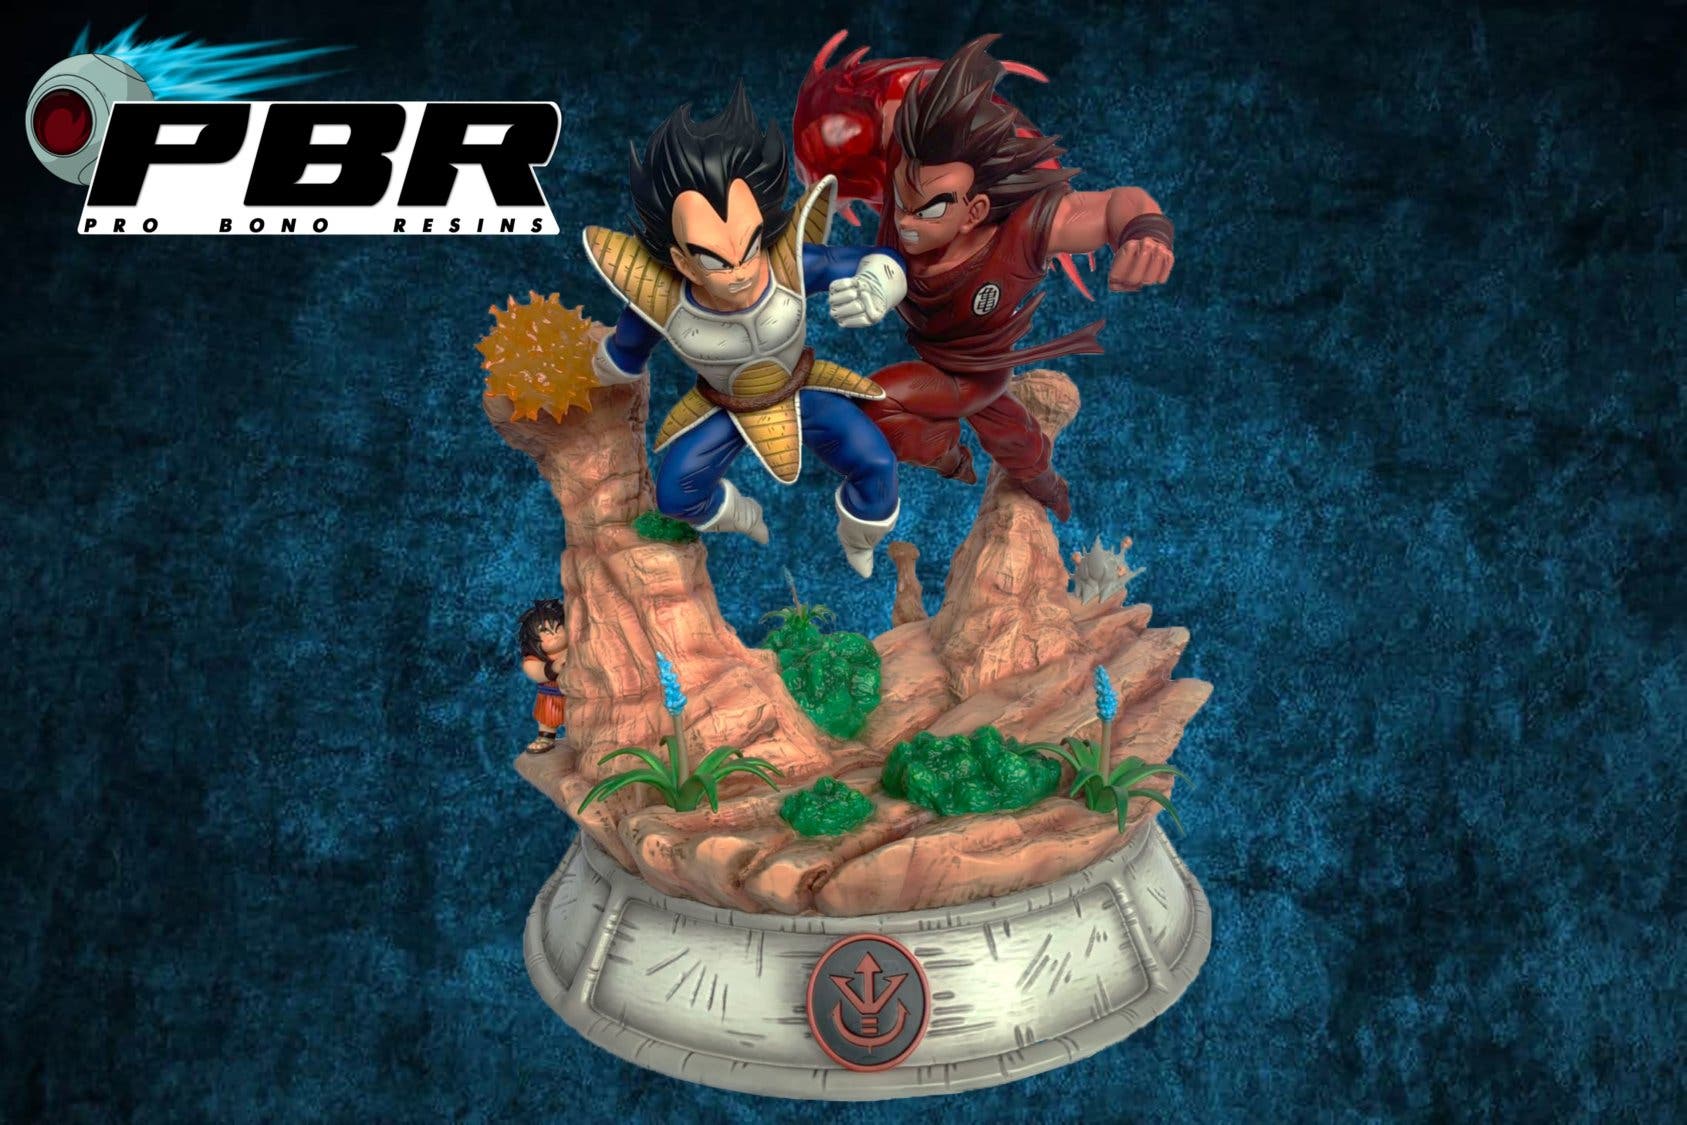 Dragon Ball: Imágenes exclusivas de la figura de Goku y Vegeta de Pro Bono  Resins